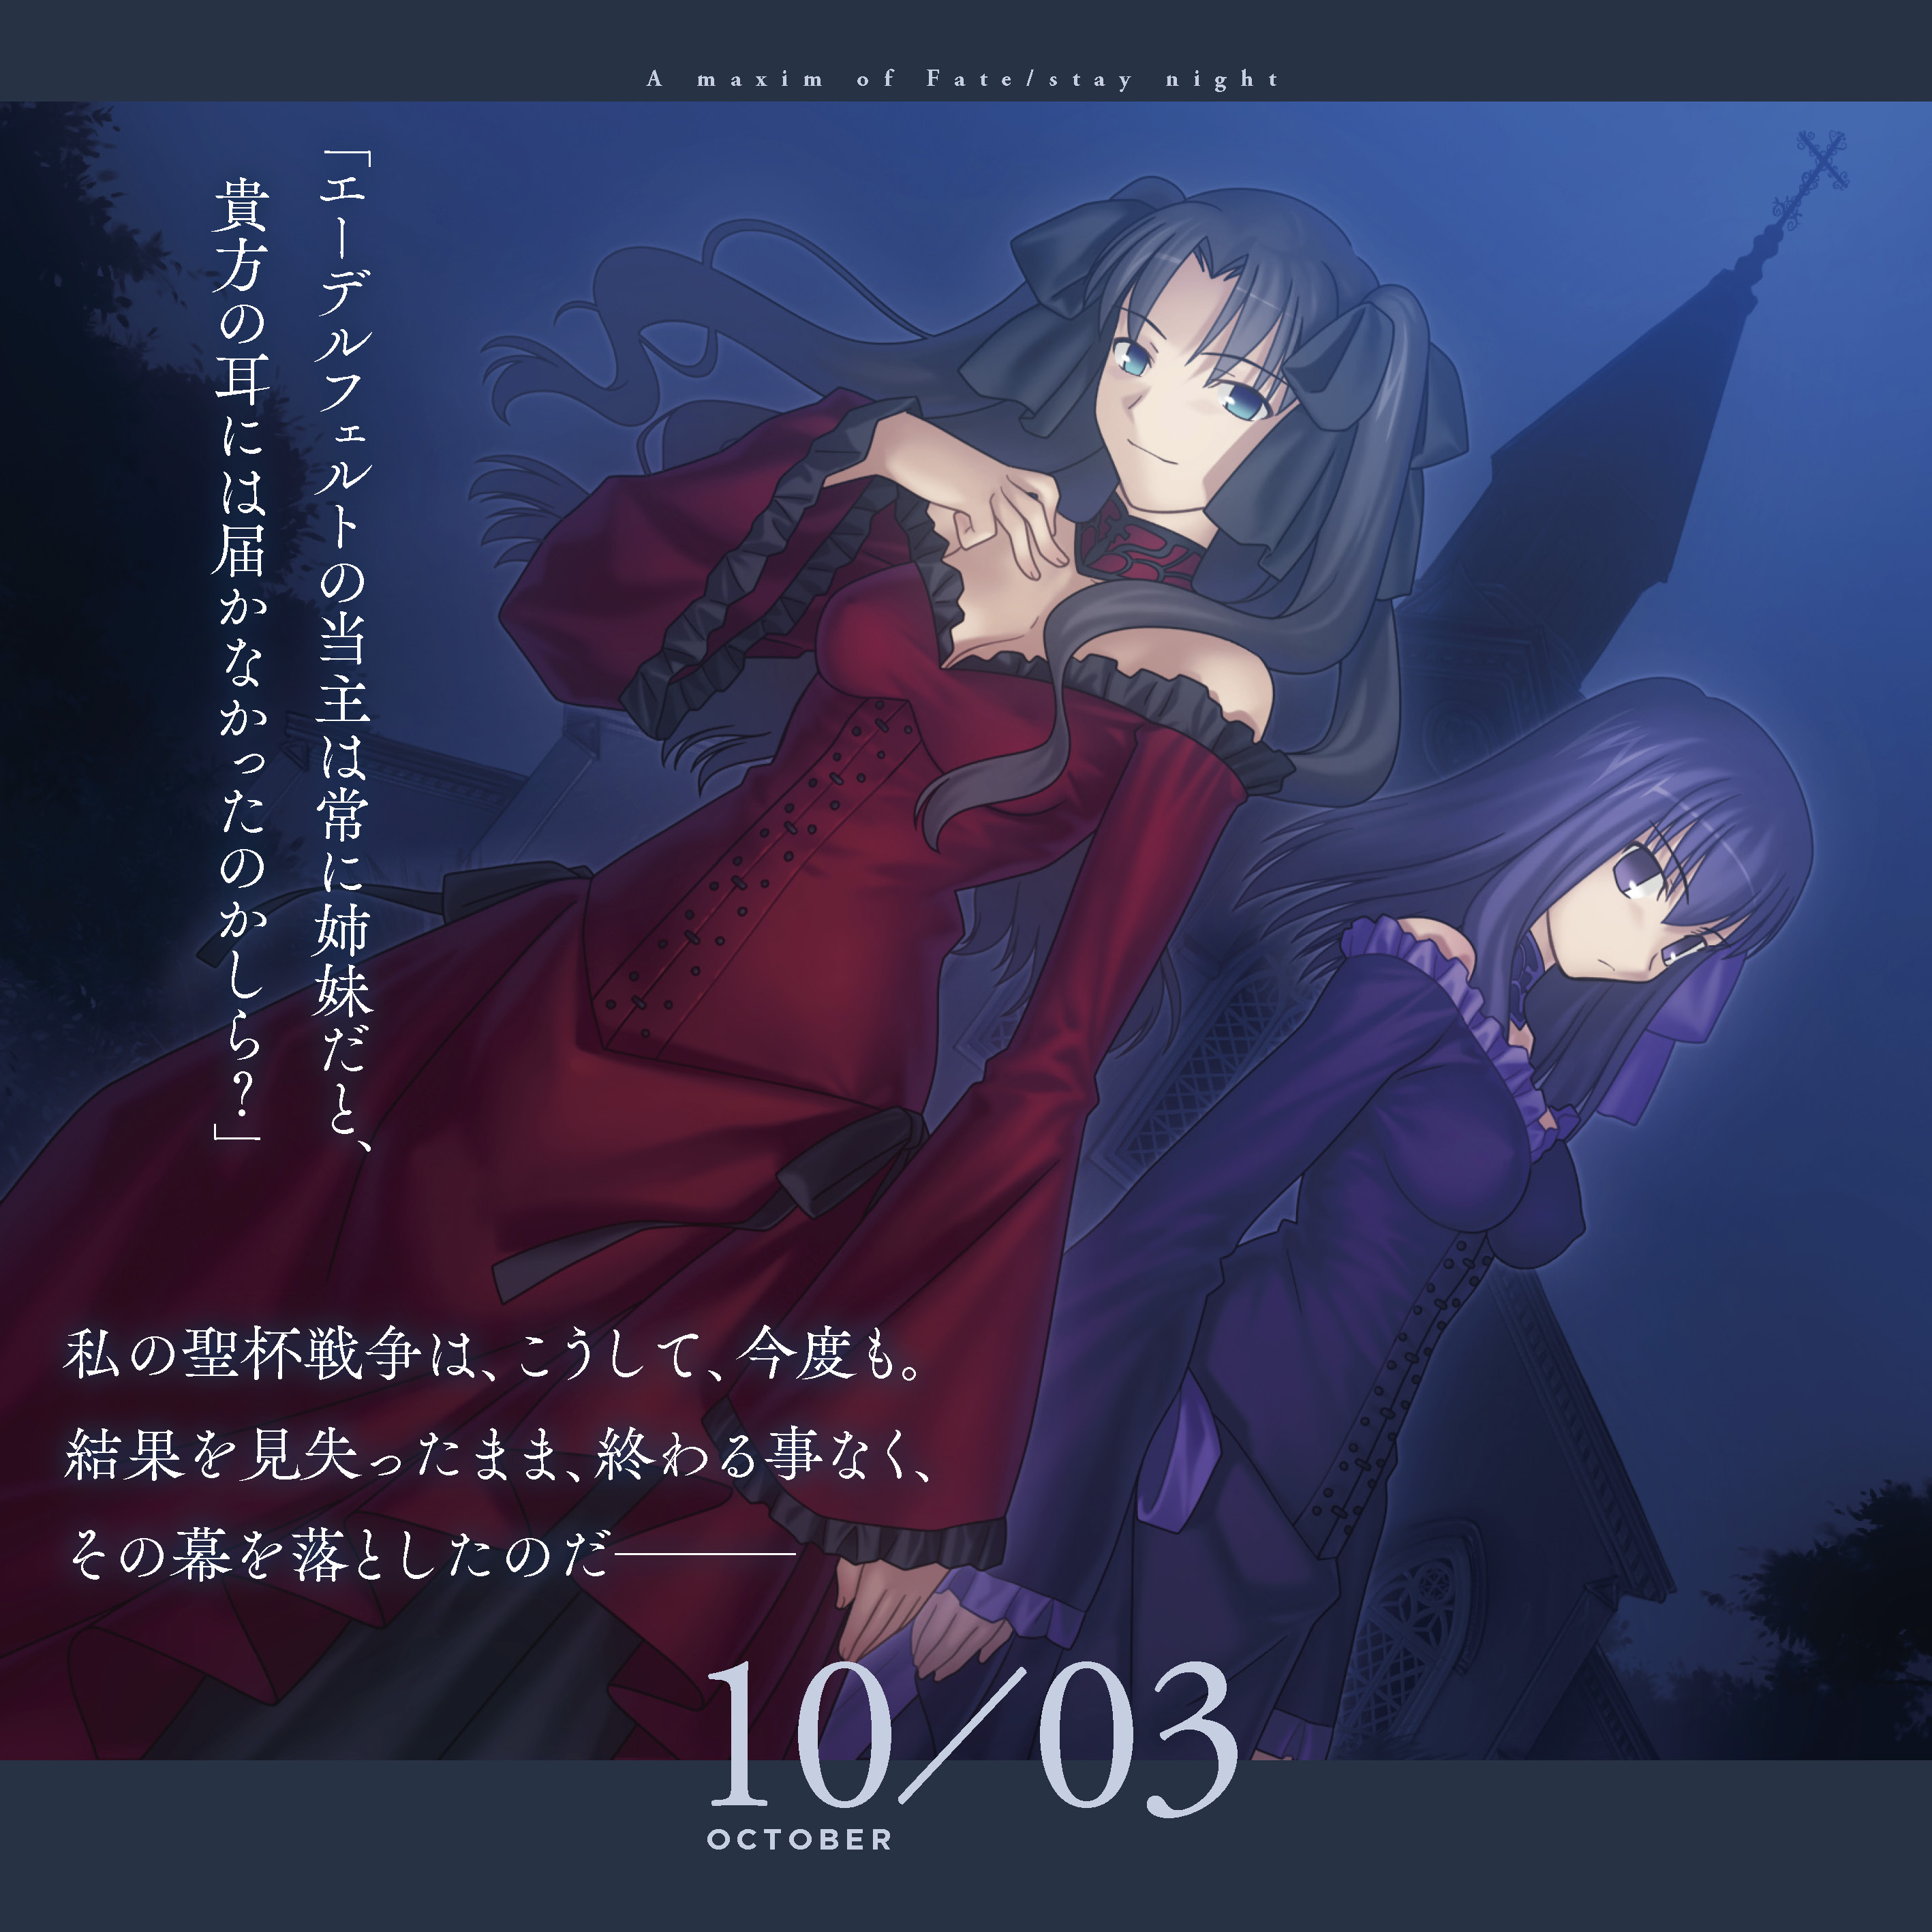 Fate/stay night 15周年記念 エターナルカレンダー』から本日は「Fate